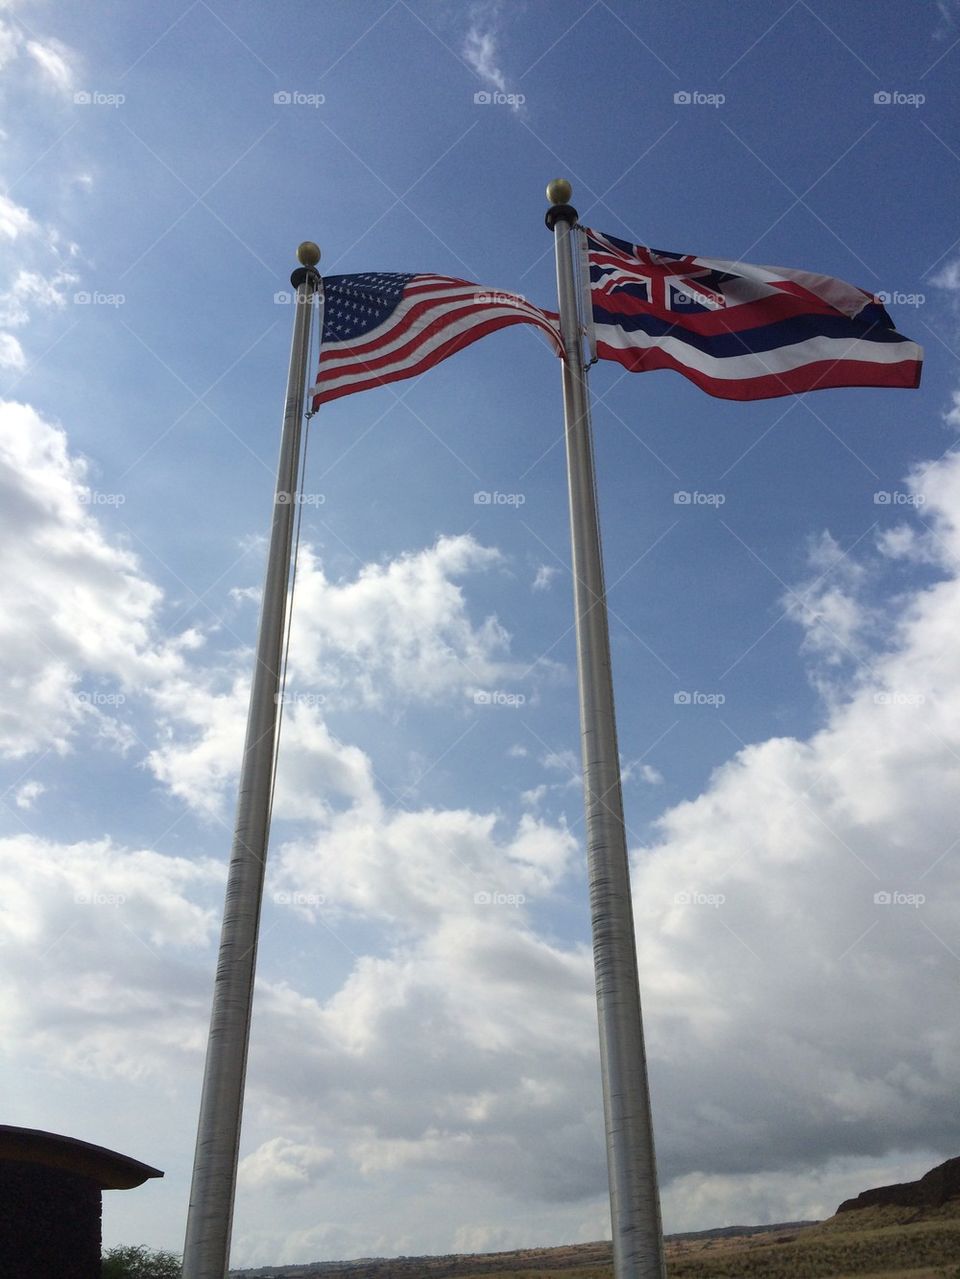 American and Hawaiian flags